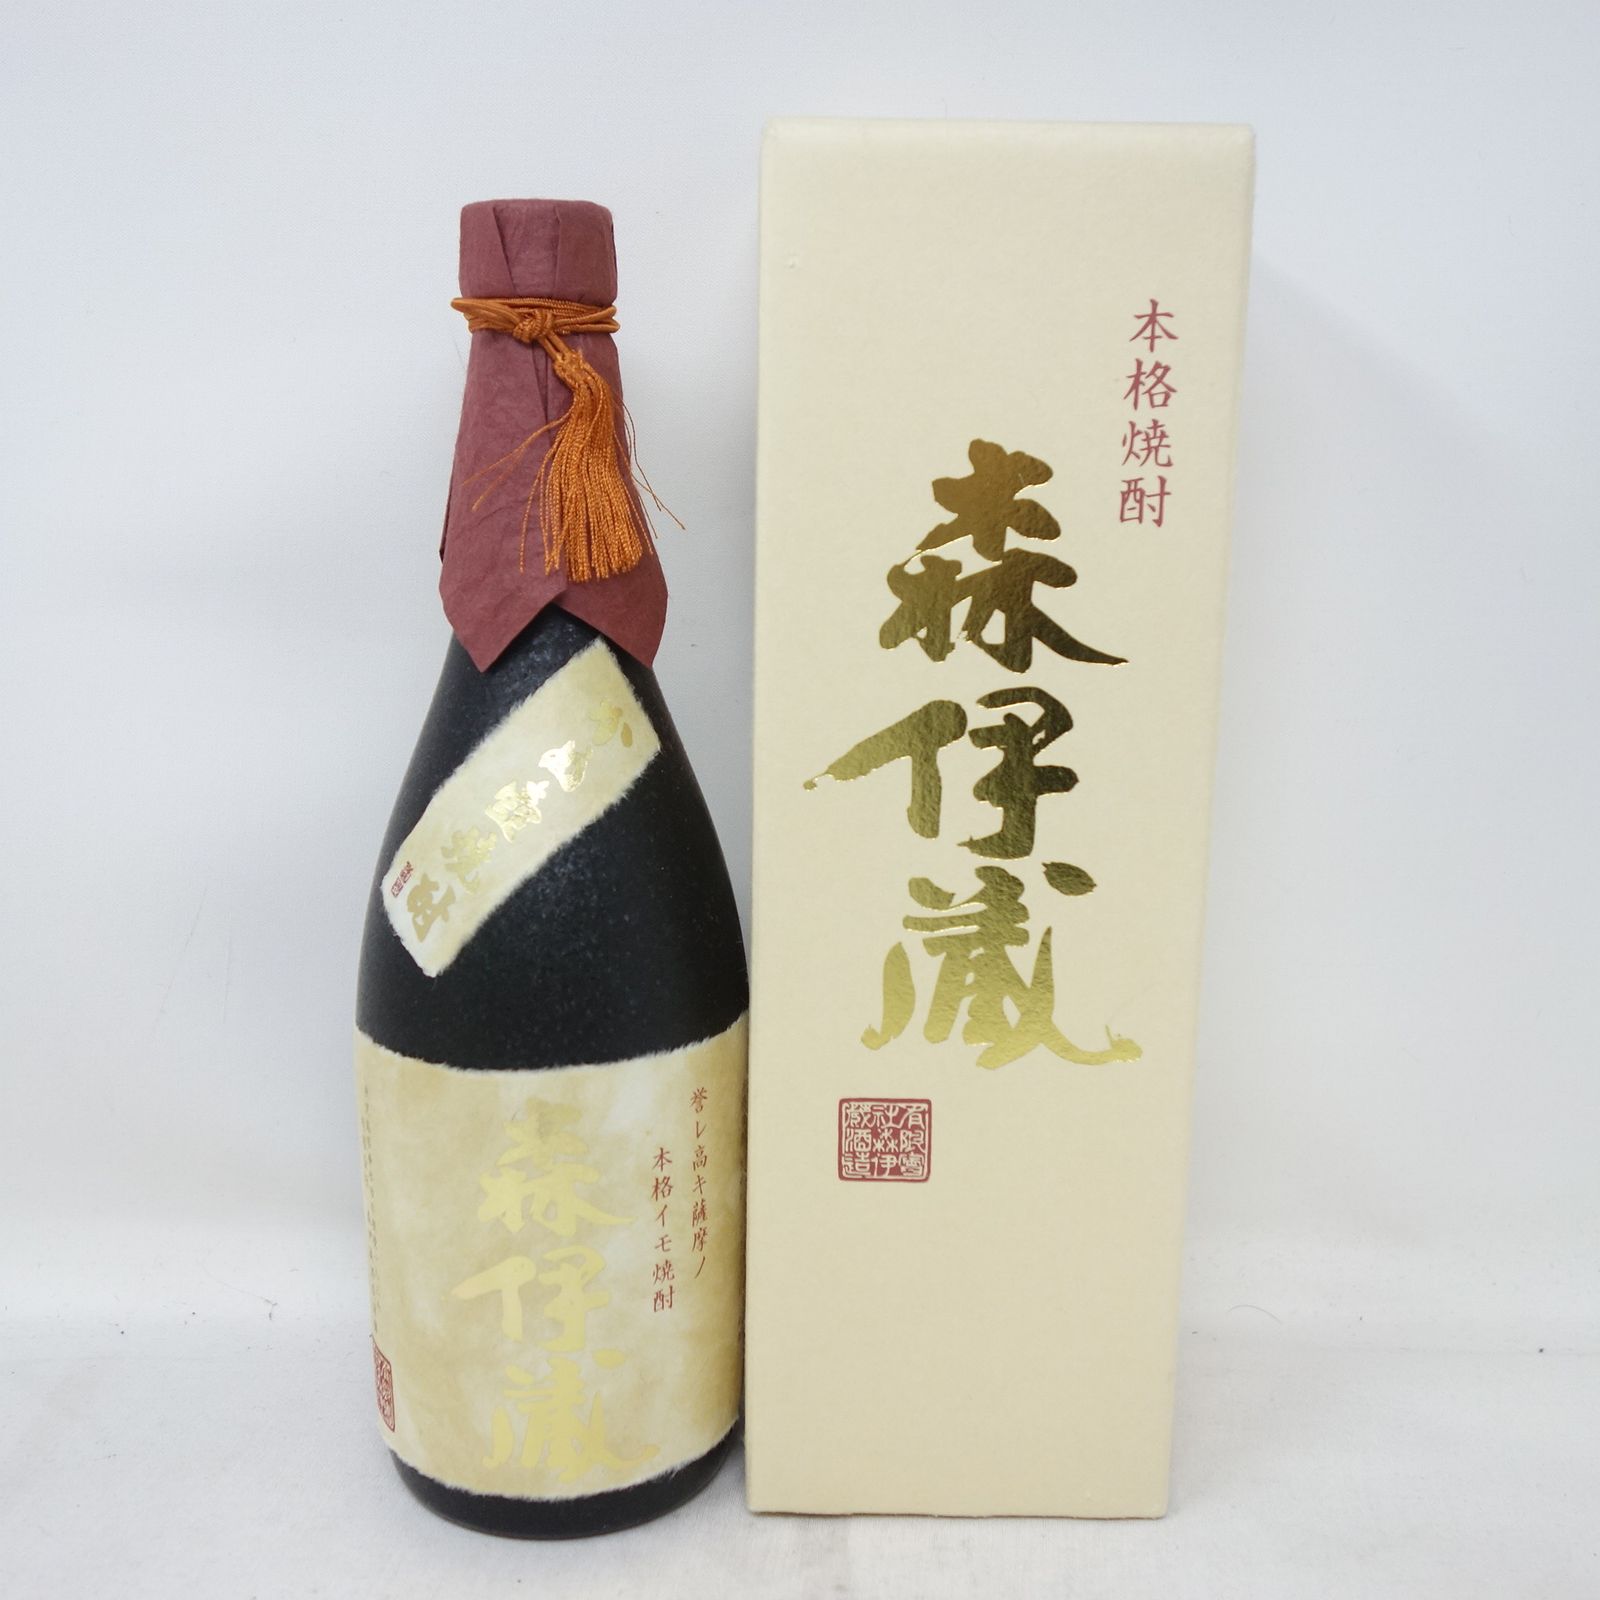 森伊蔵 金ラベル かめ壺焼酎 720ml【B2】 - お酒の格安本舗 クーポン